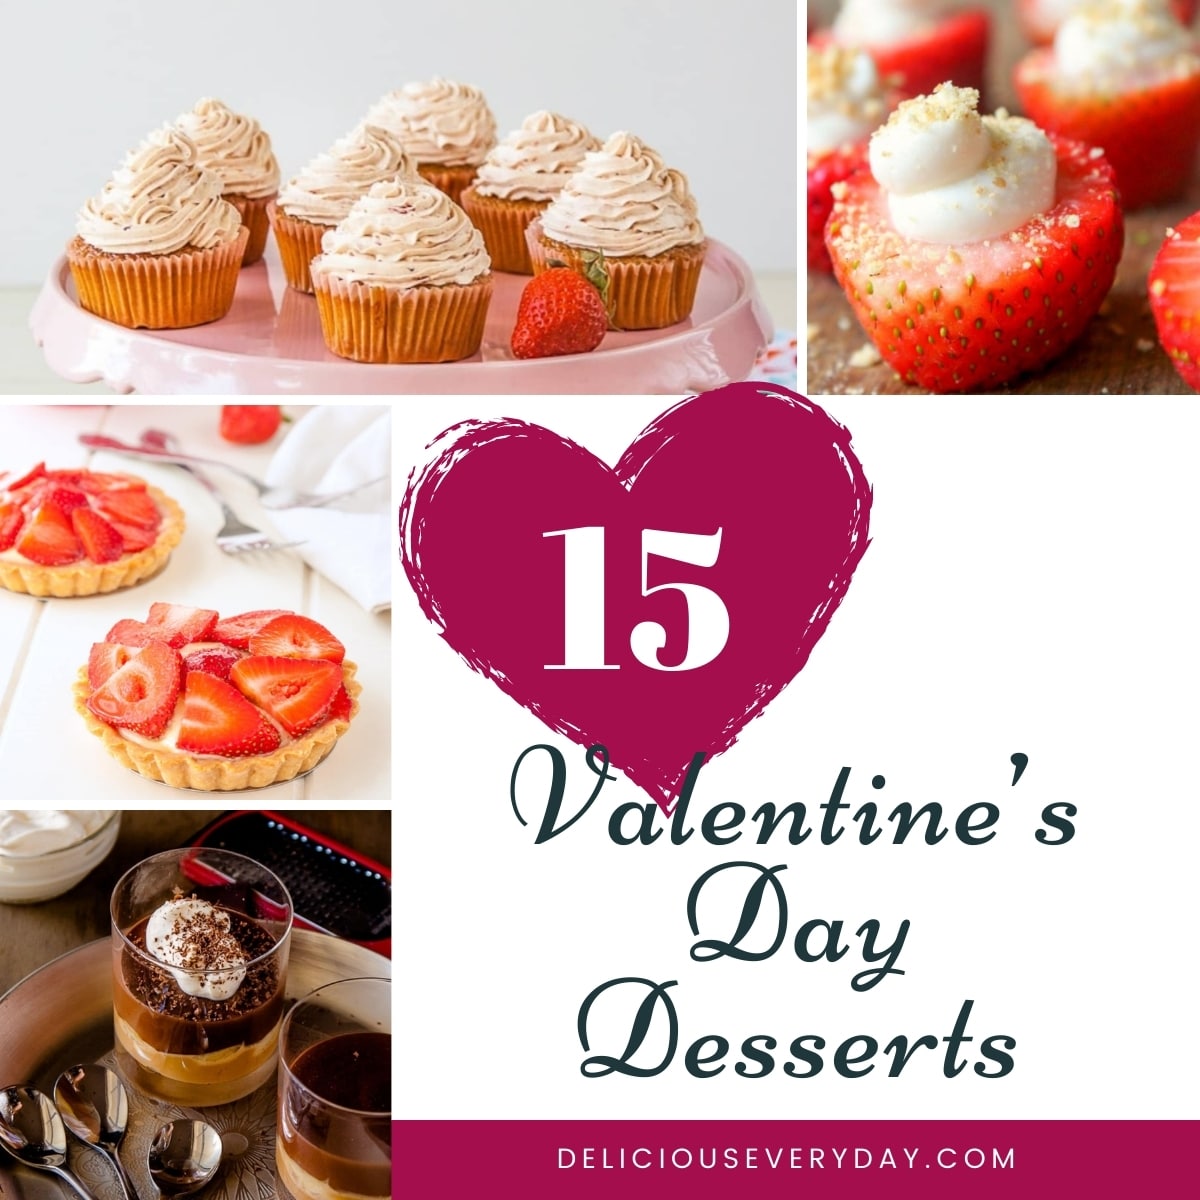 best valentine's day desserts